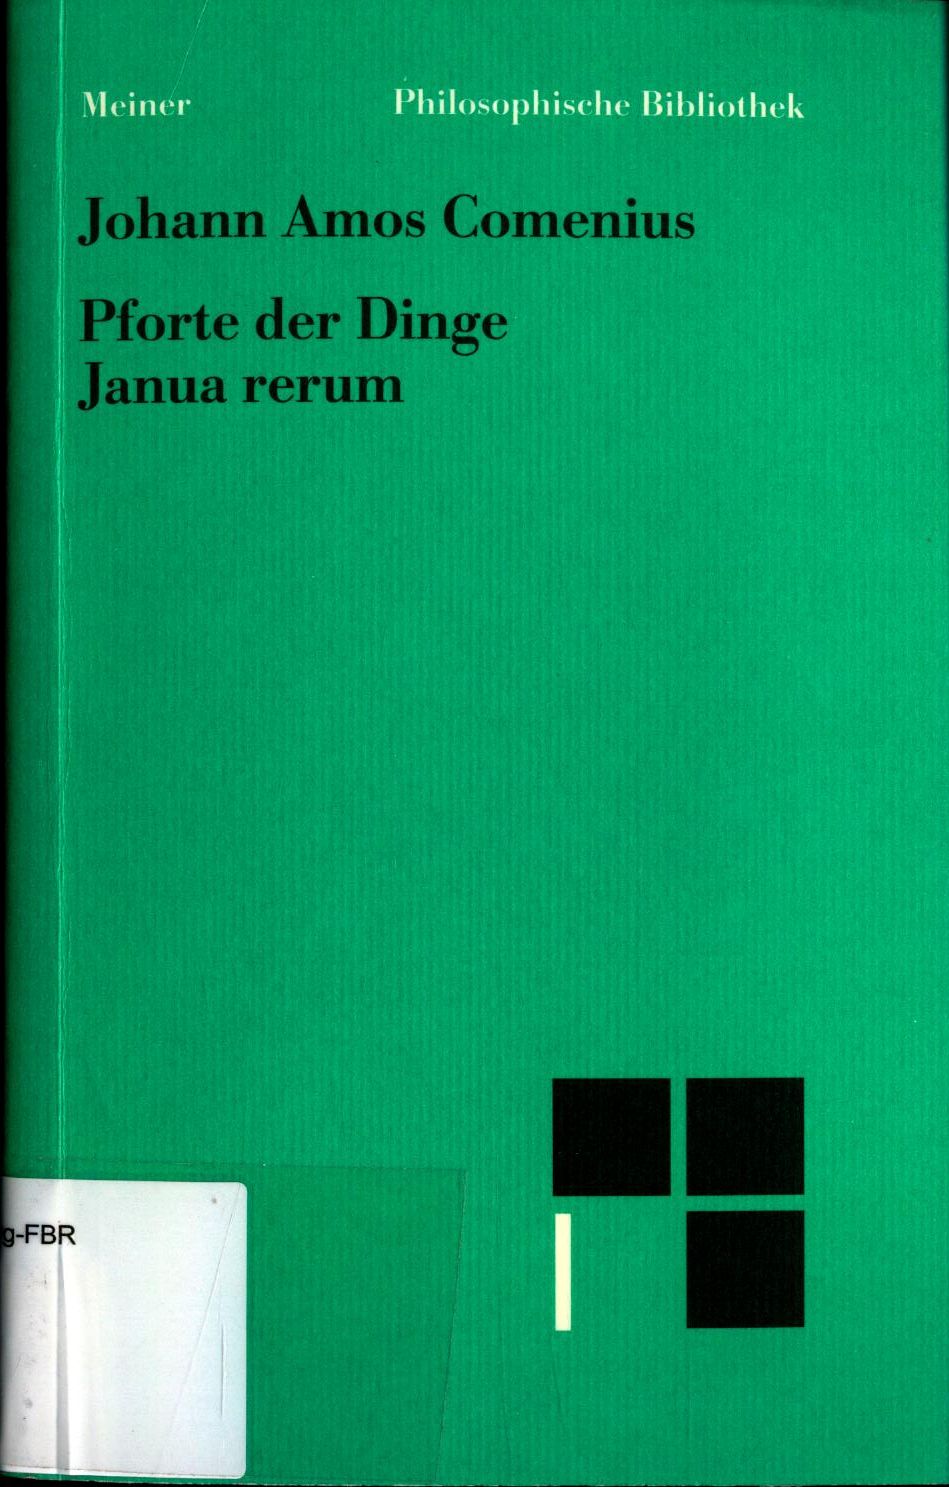 Pforte der Dinge Janua rerum Eingeleitet übersetzt und mit Anmerkungen versehen von Erwin Schadel - Comenius, Johann Amos und Erwin Schadel